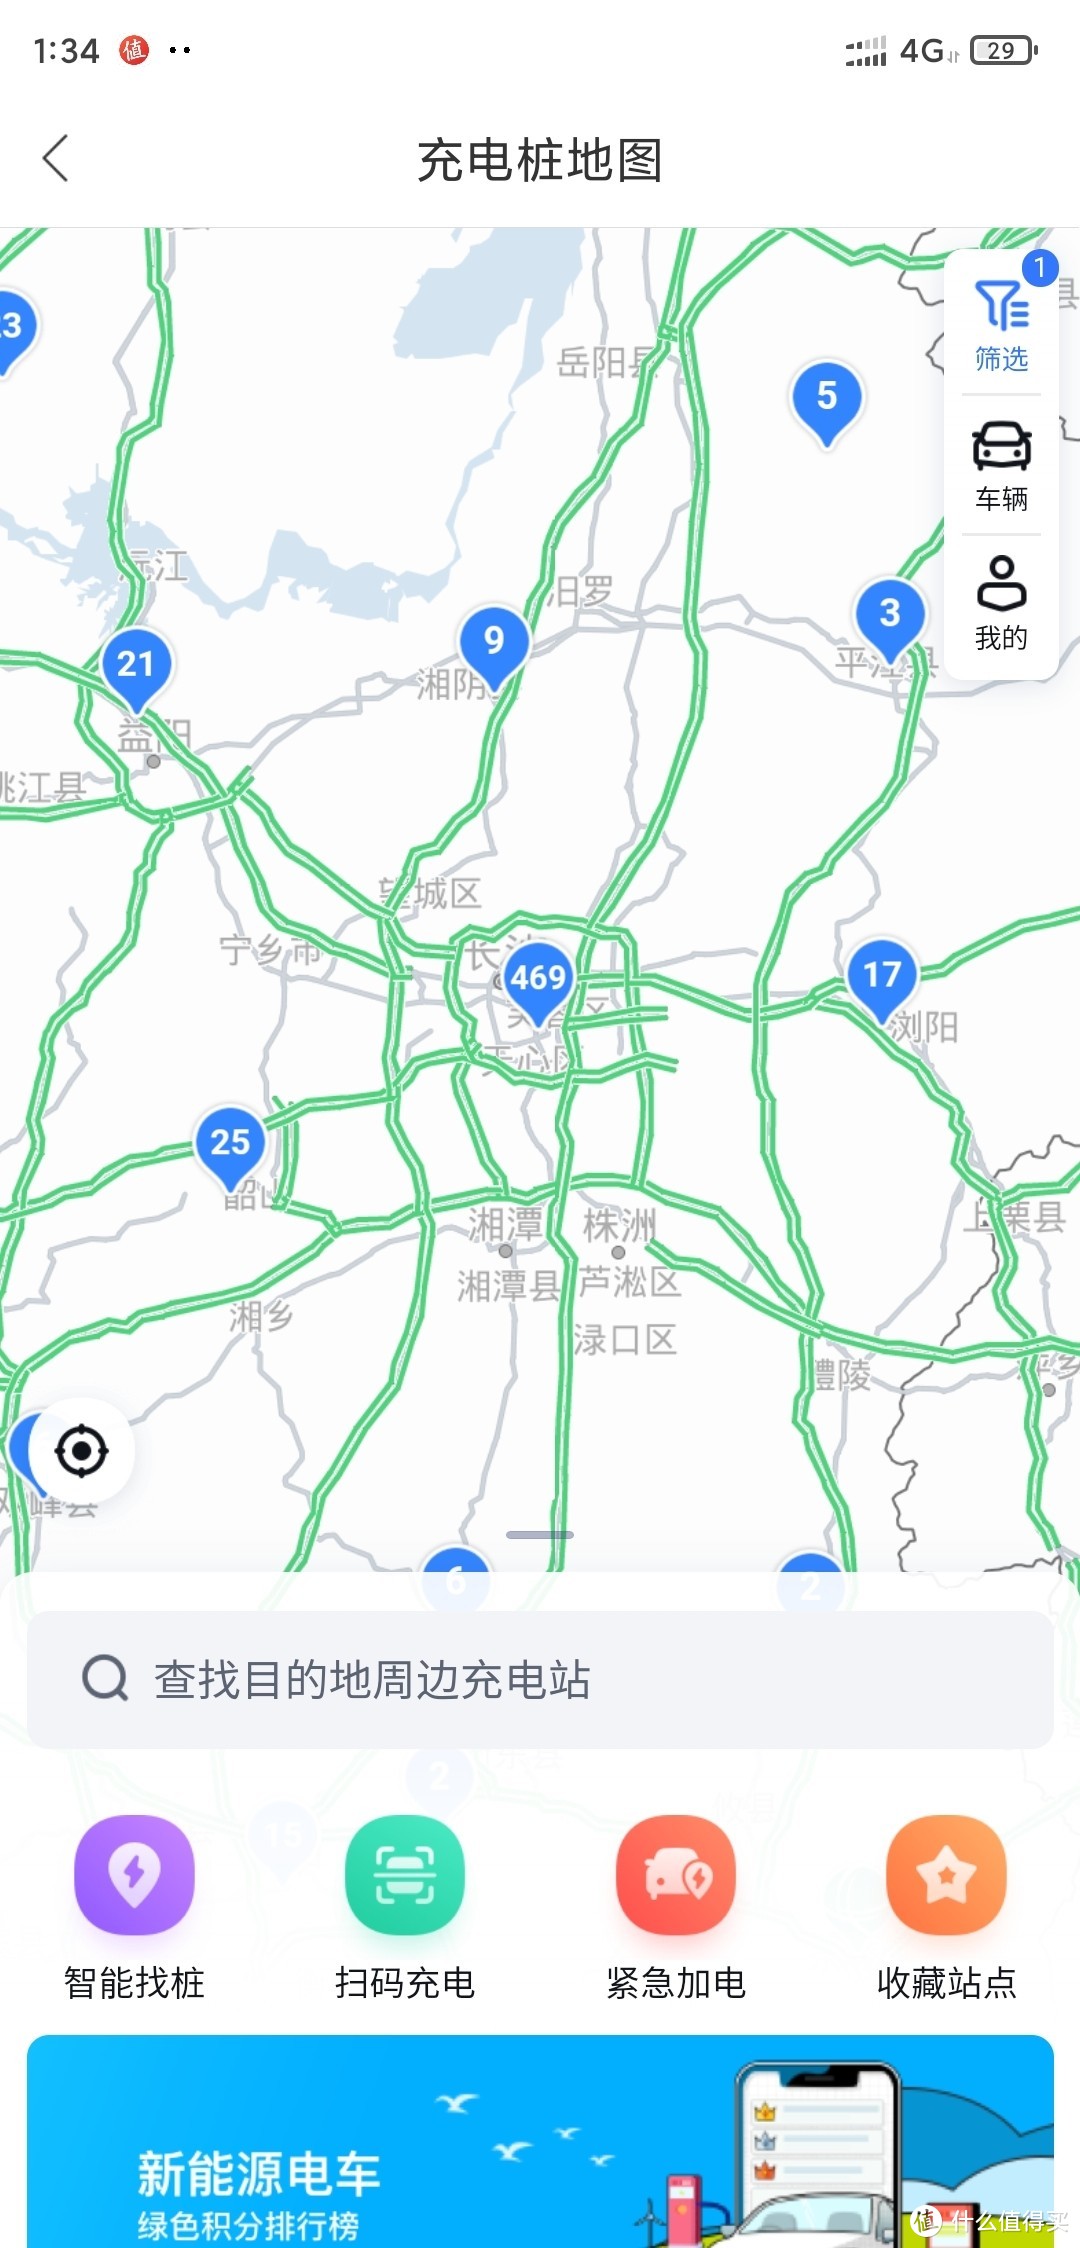 现在南方各大主要城市，充电桩已经分布挺广泛了。但是各家app只显示自己授权的充电桩。实际比地图上的还多。